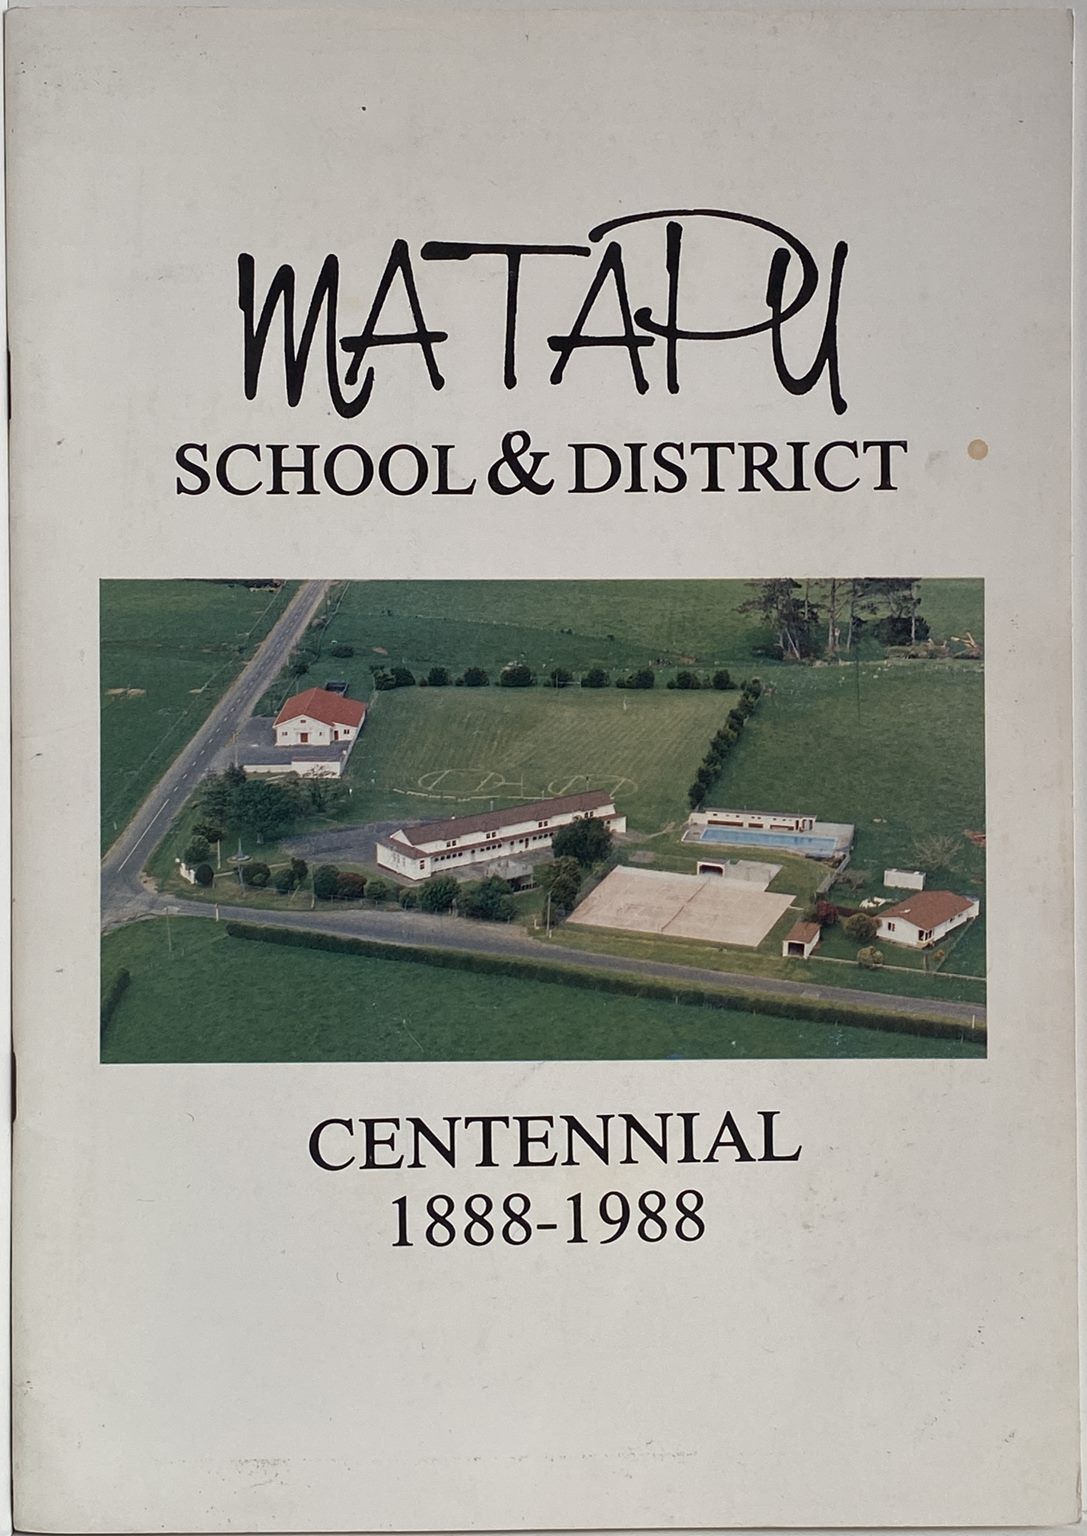 MATAPU: School and District, Centennial 1888 - 1988